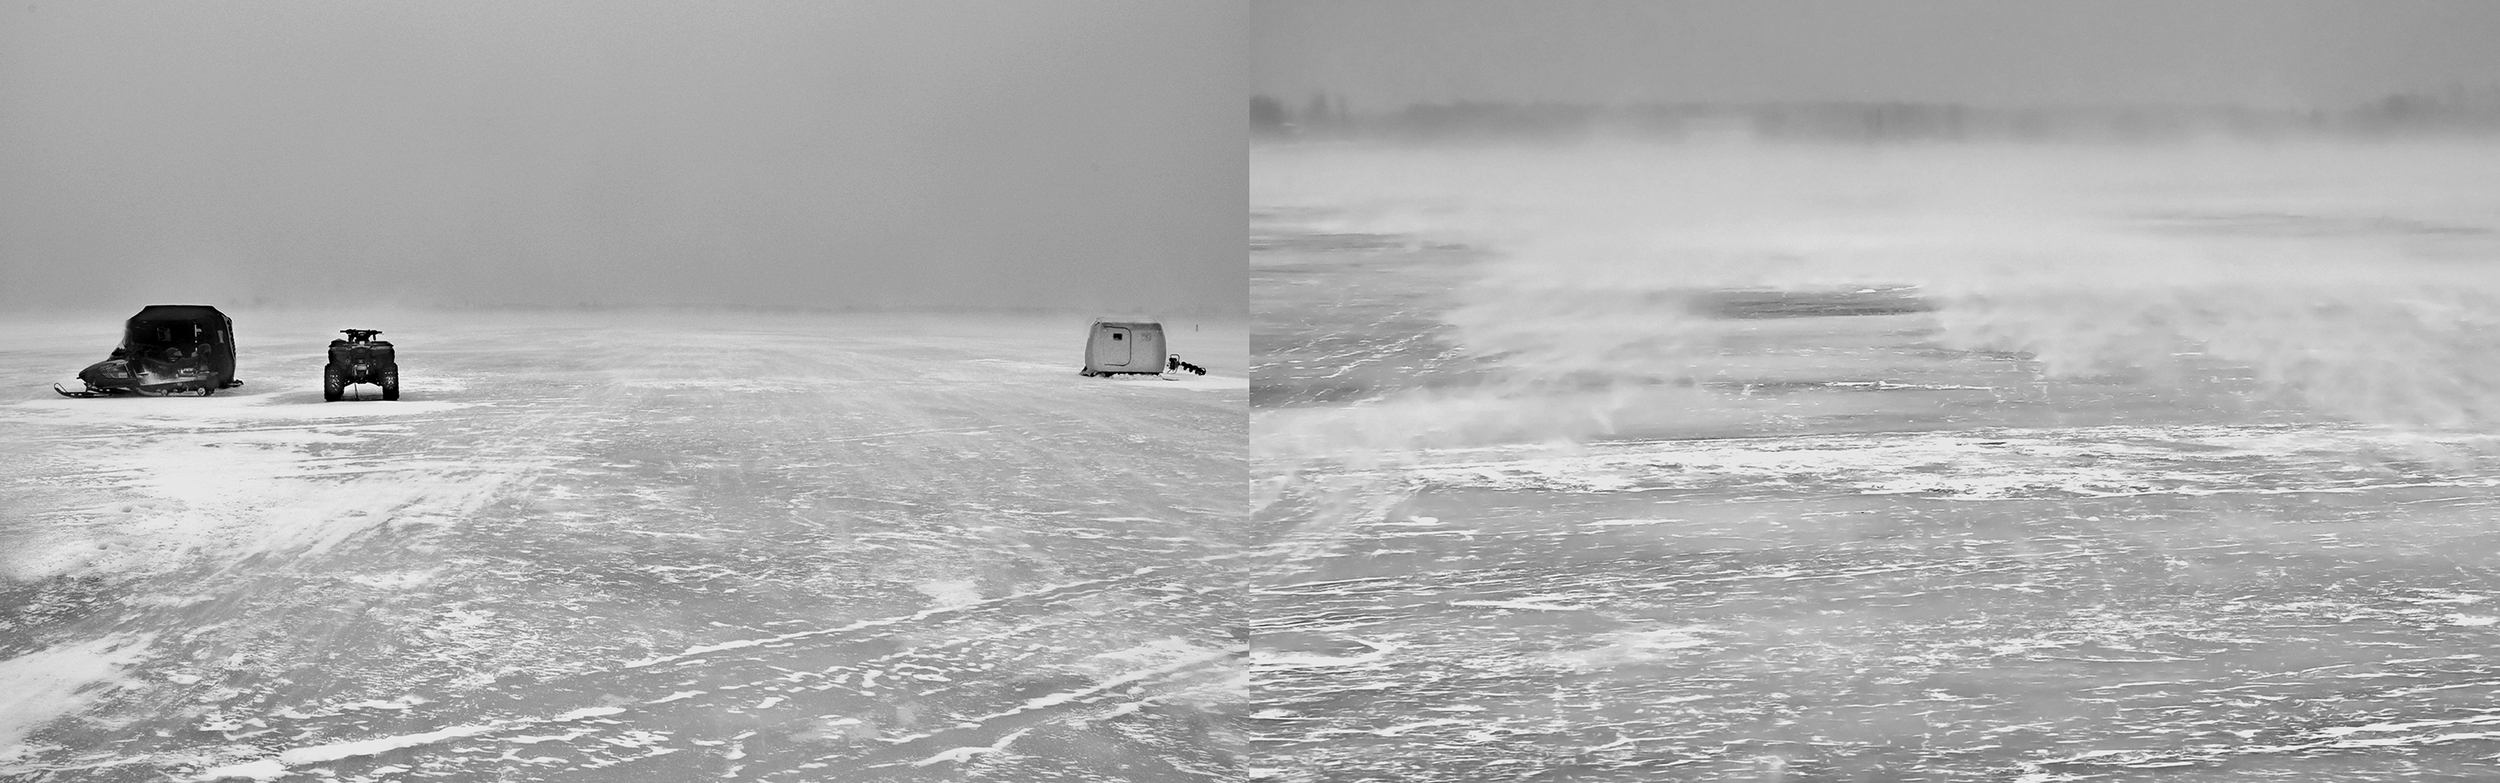 Bay of Quinte Snow Storm, 2011